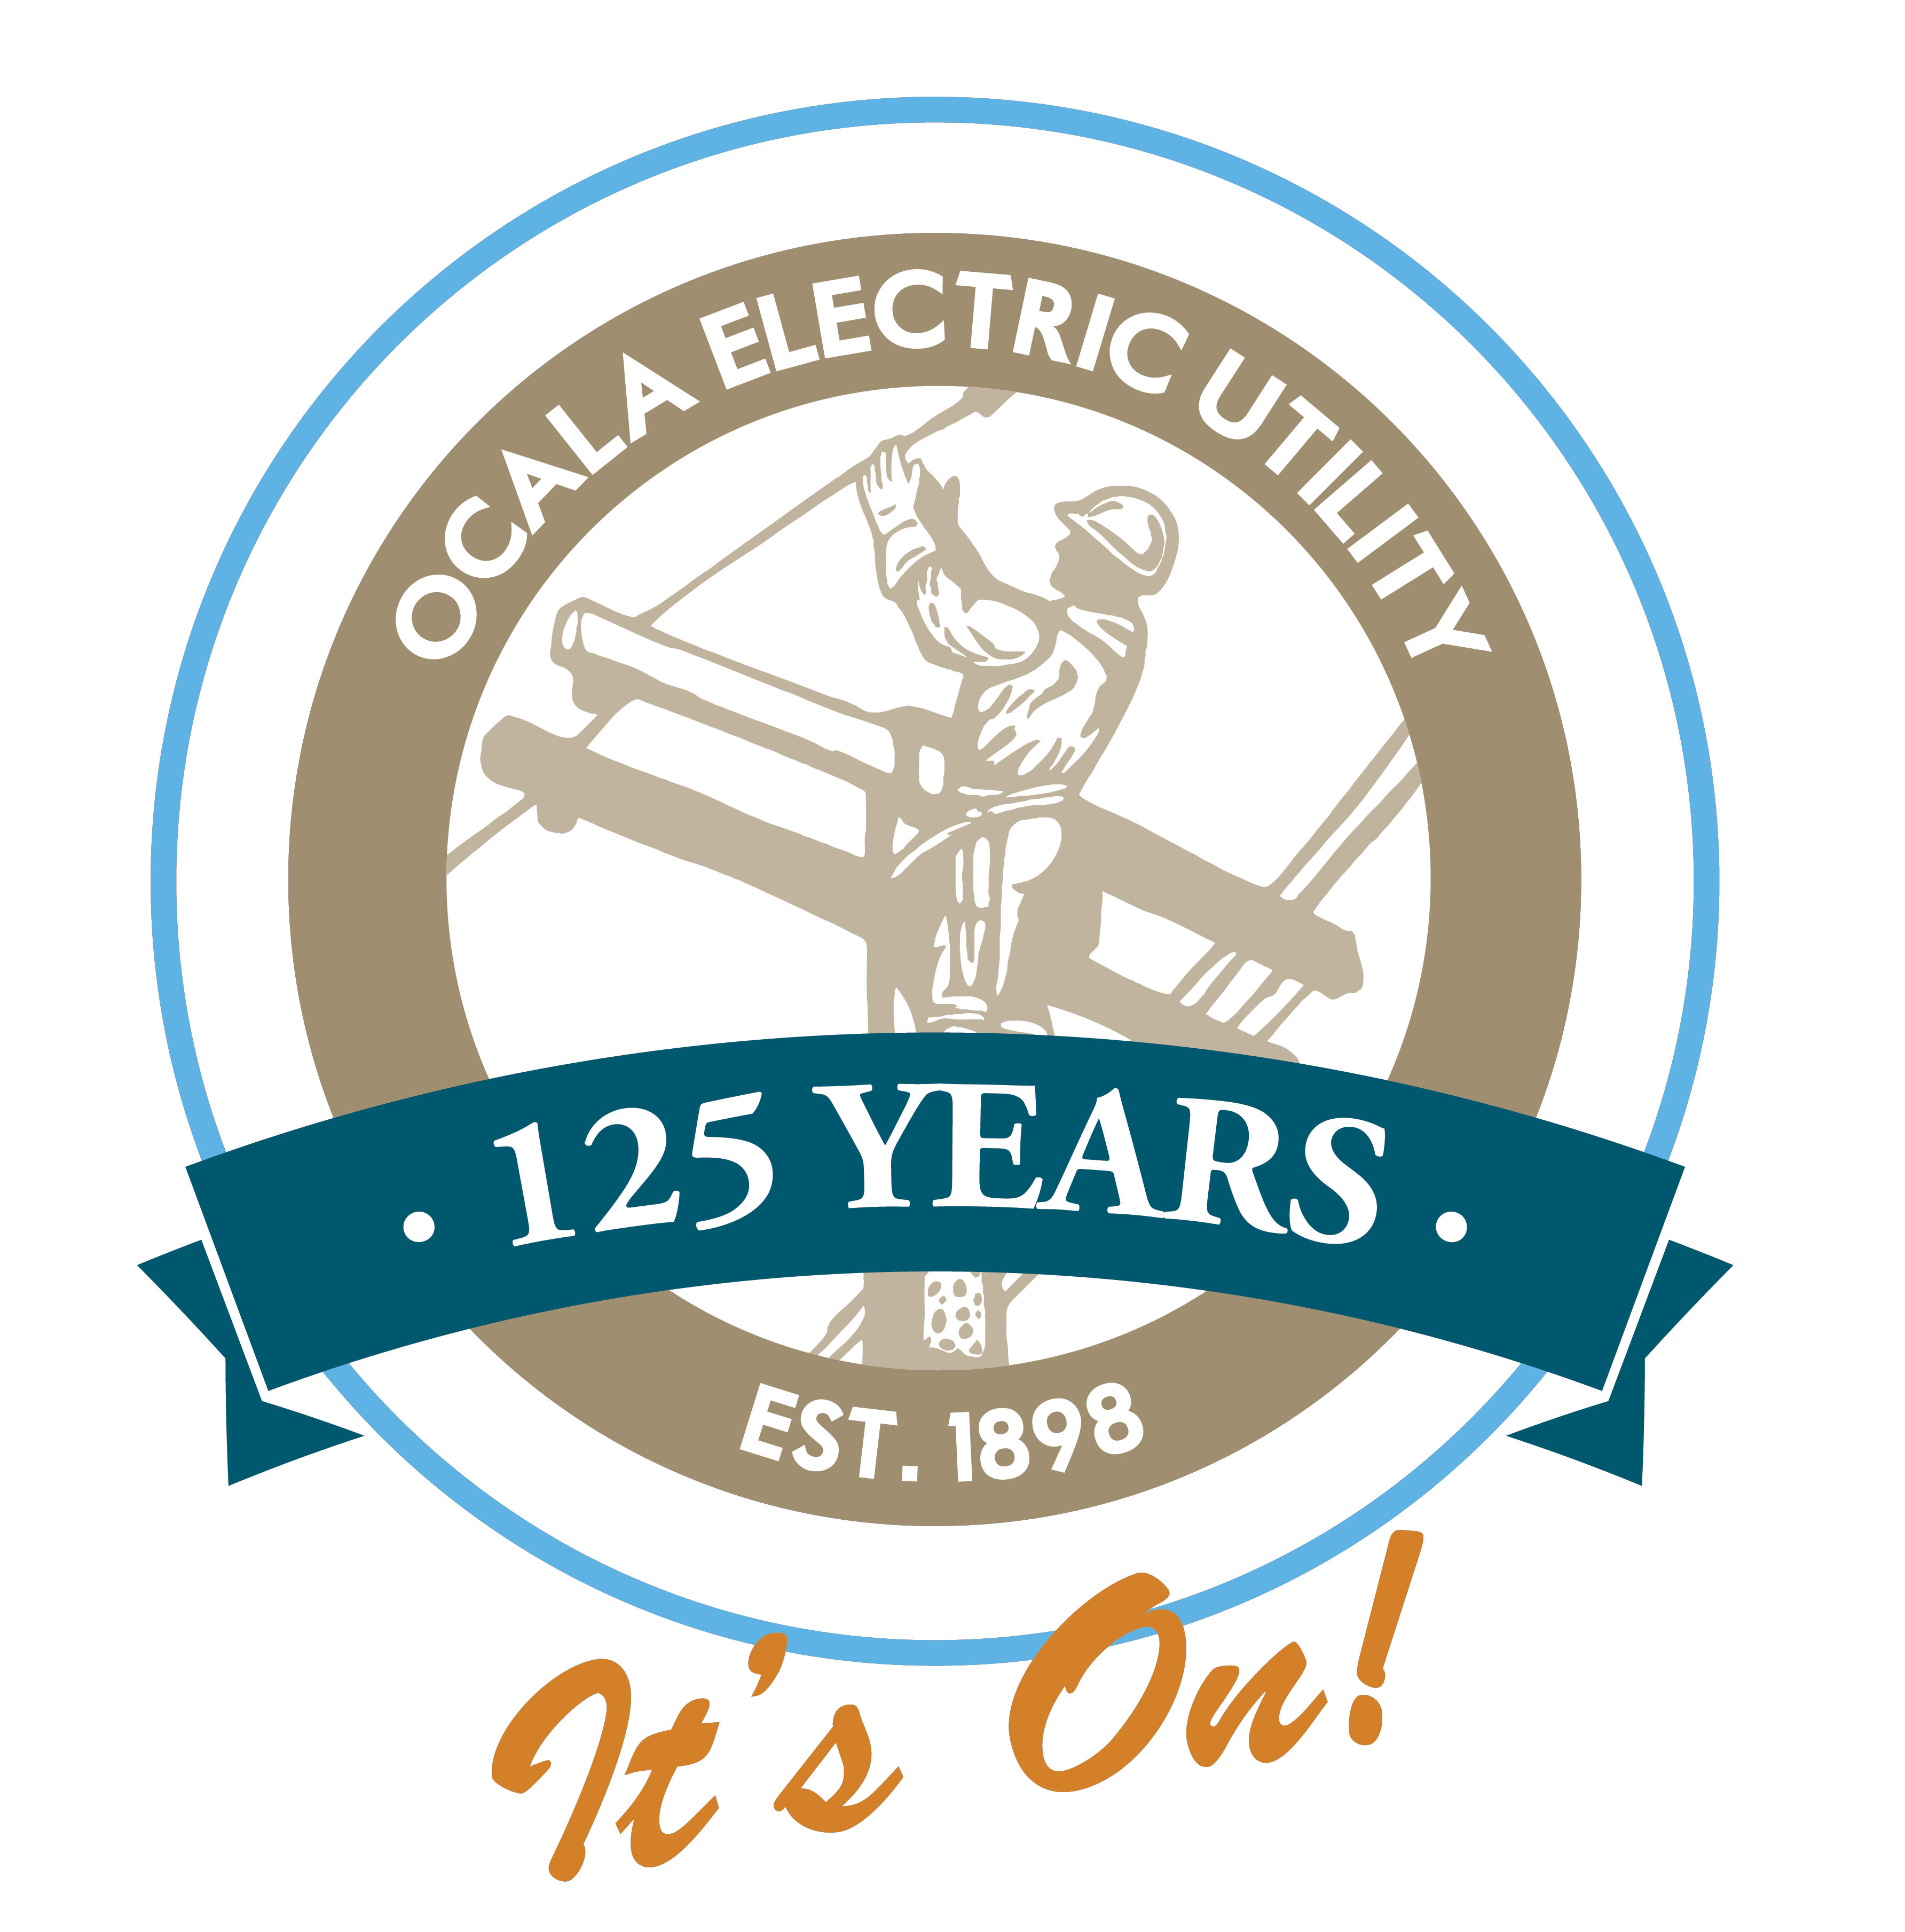 Ocala Electric Utility 125 Years